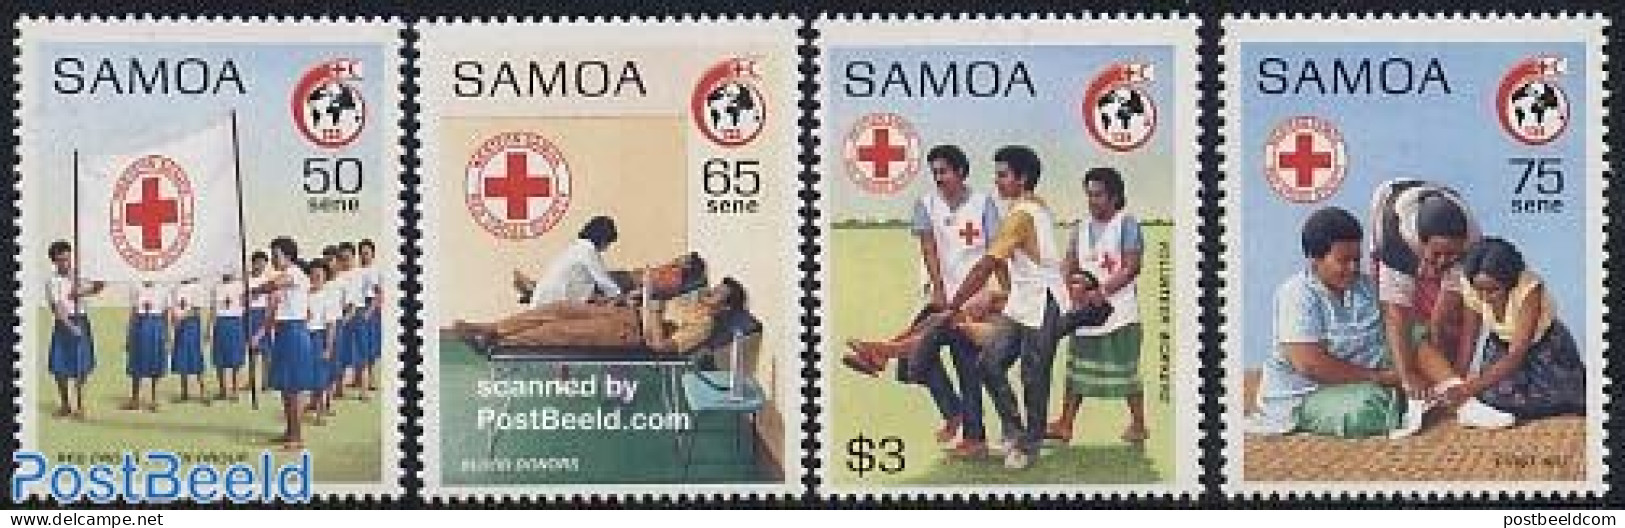 Samoa 1989 Red Cross 4v, Mint NH, Health - Red Cross - Red Cross